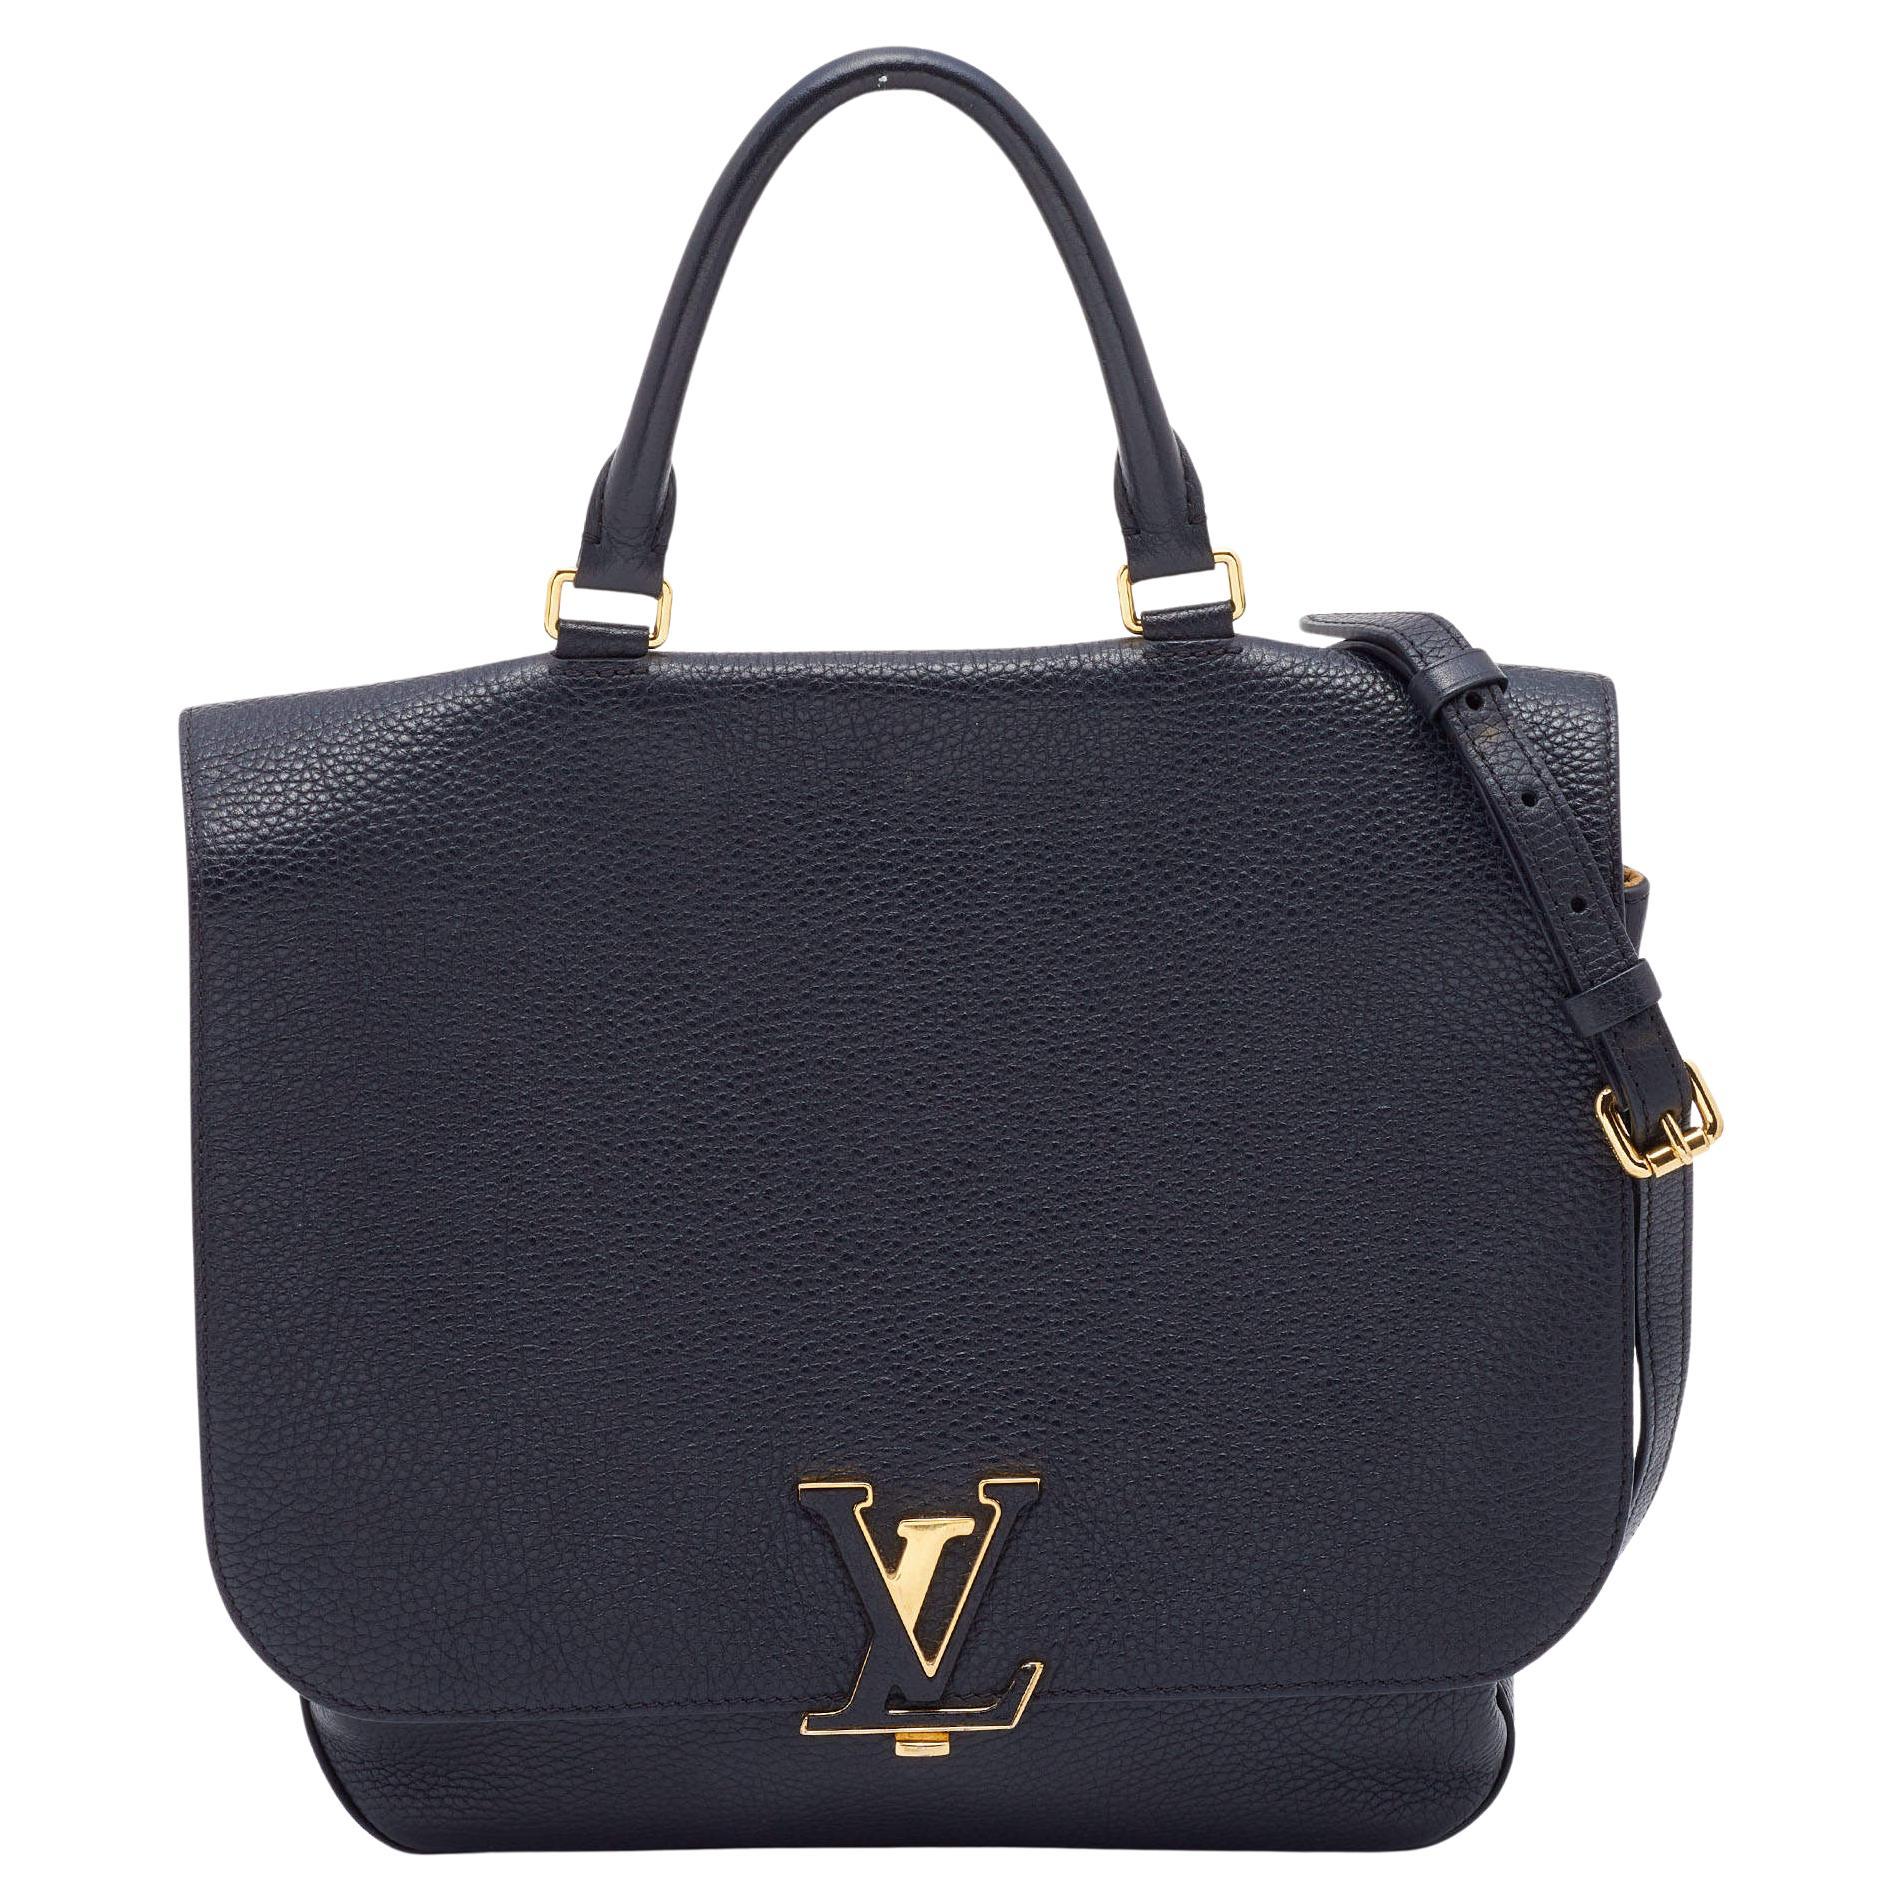 Louis Vuitton Black Taurillon Leather Volta Top Handle Bag